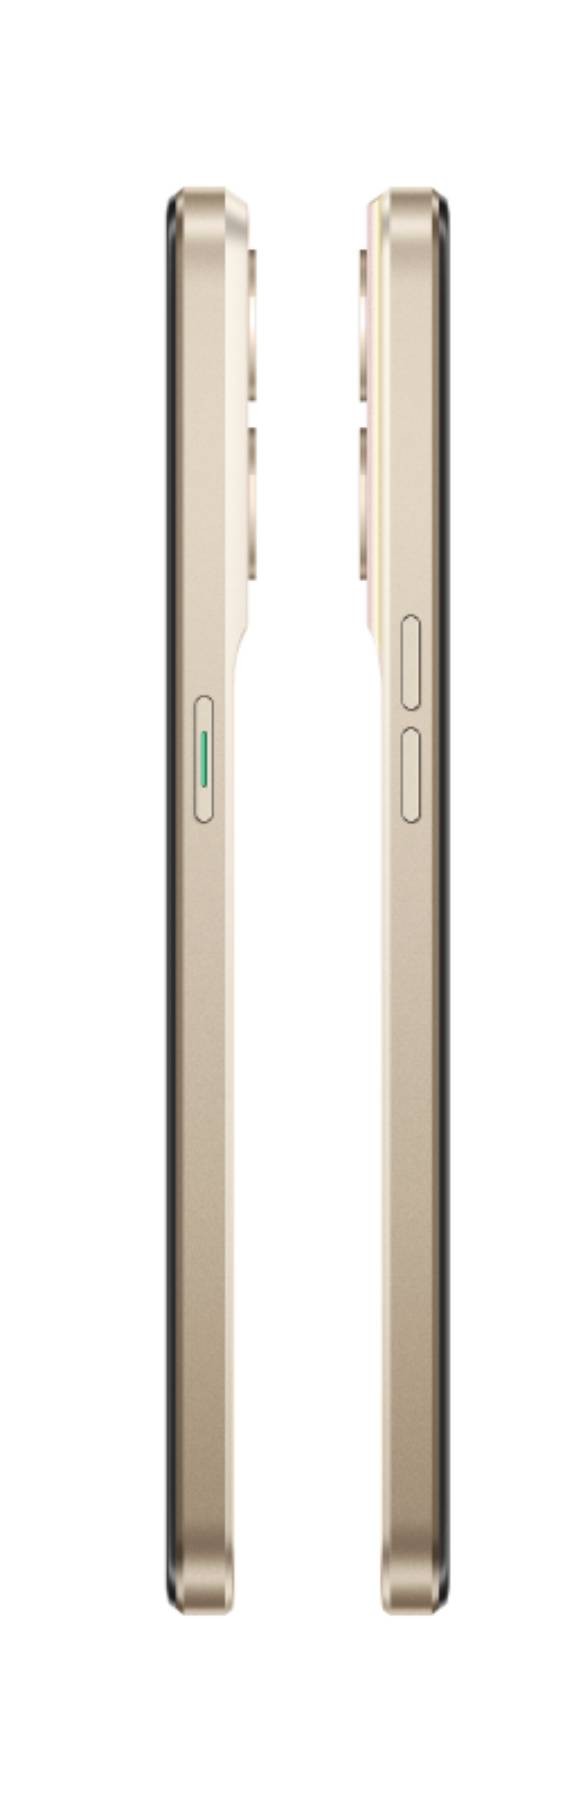 OPPO Smartphone Reno 8 256 Go Shimmer Gold - OPPO-RENO8-256-OR